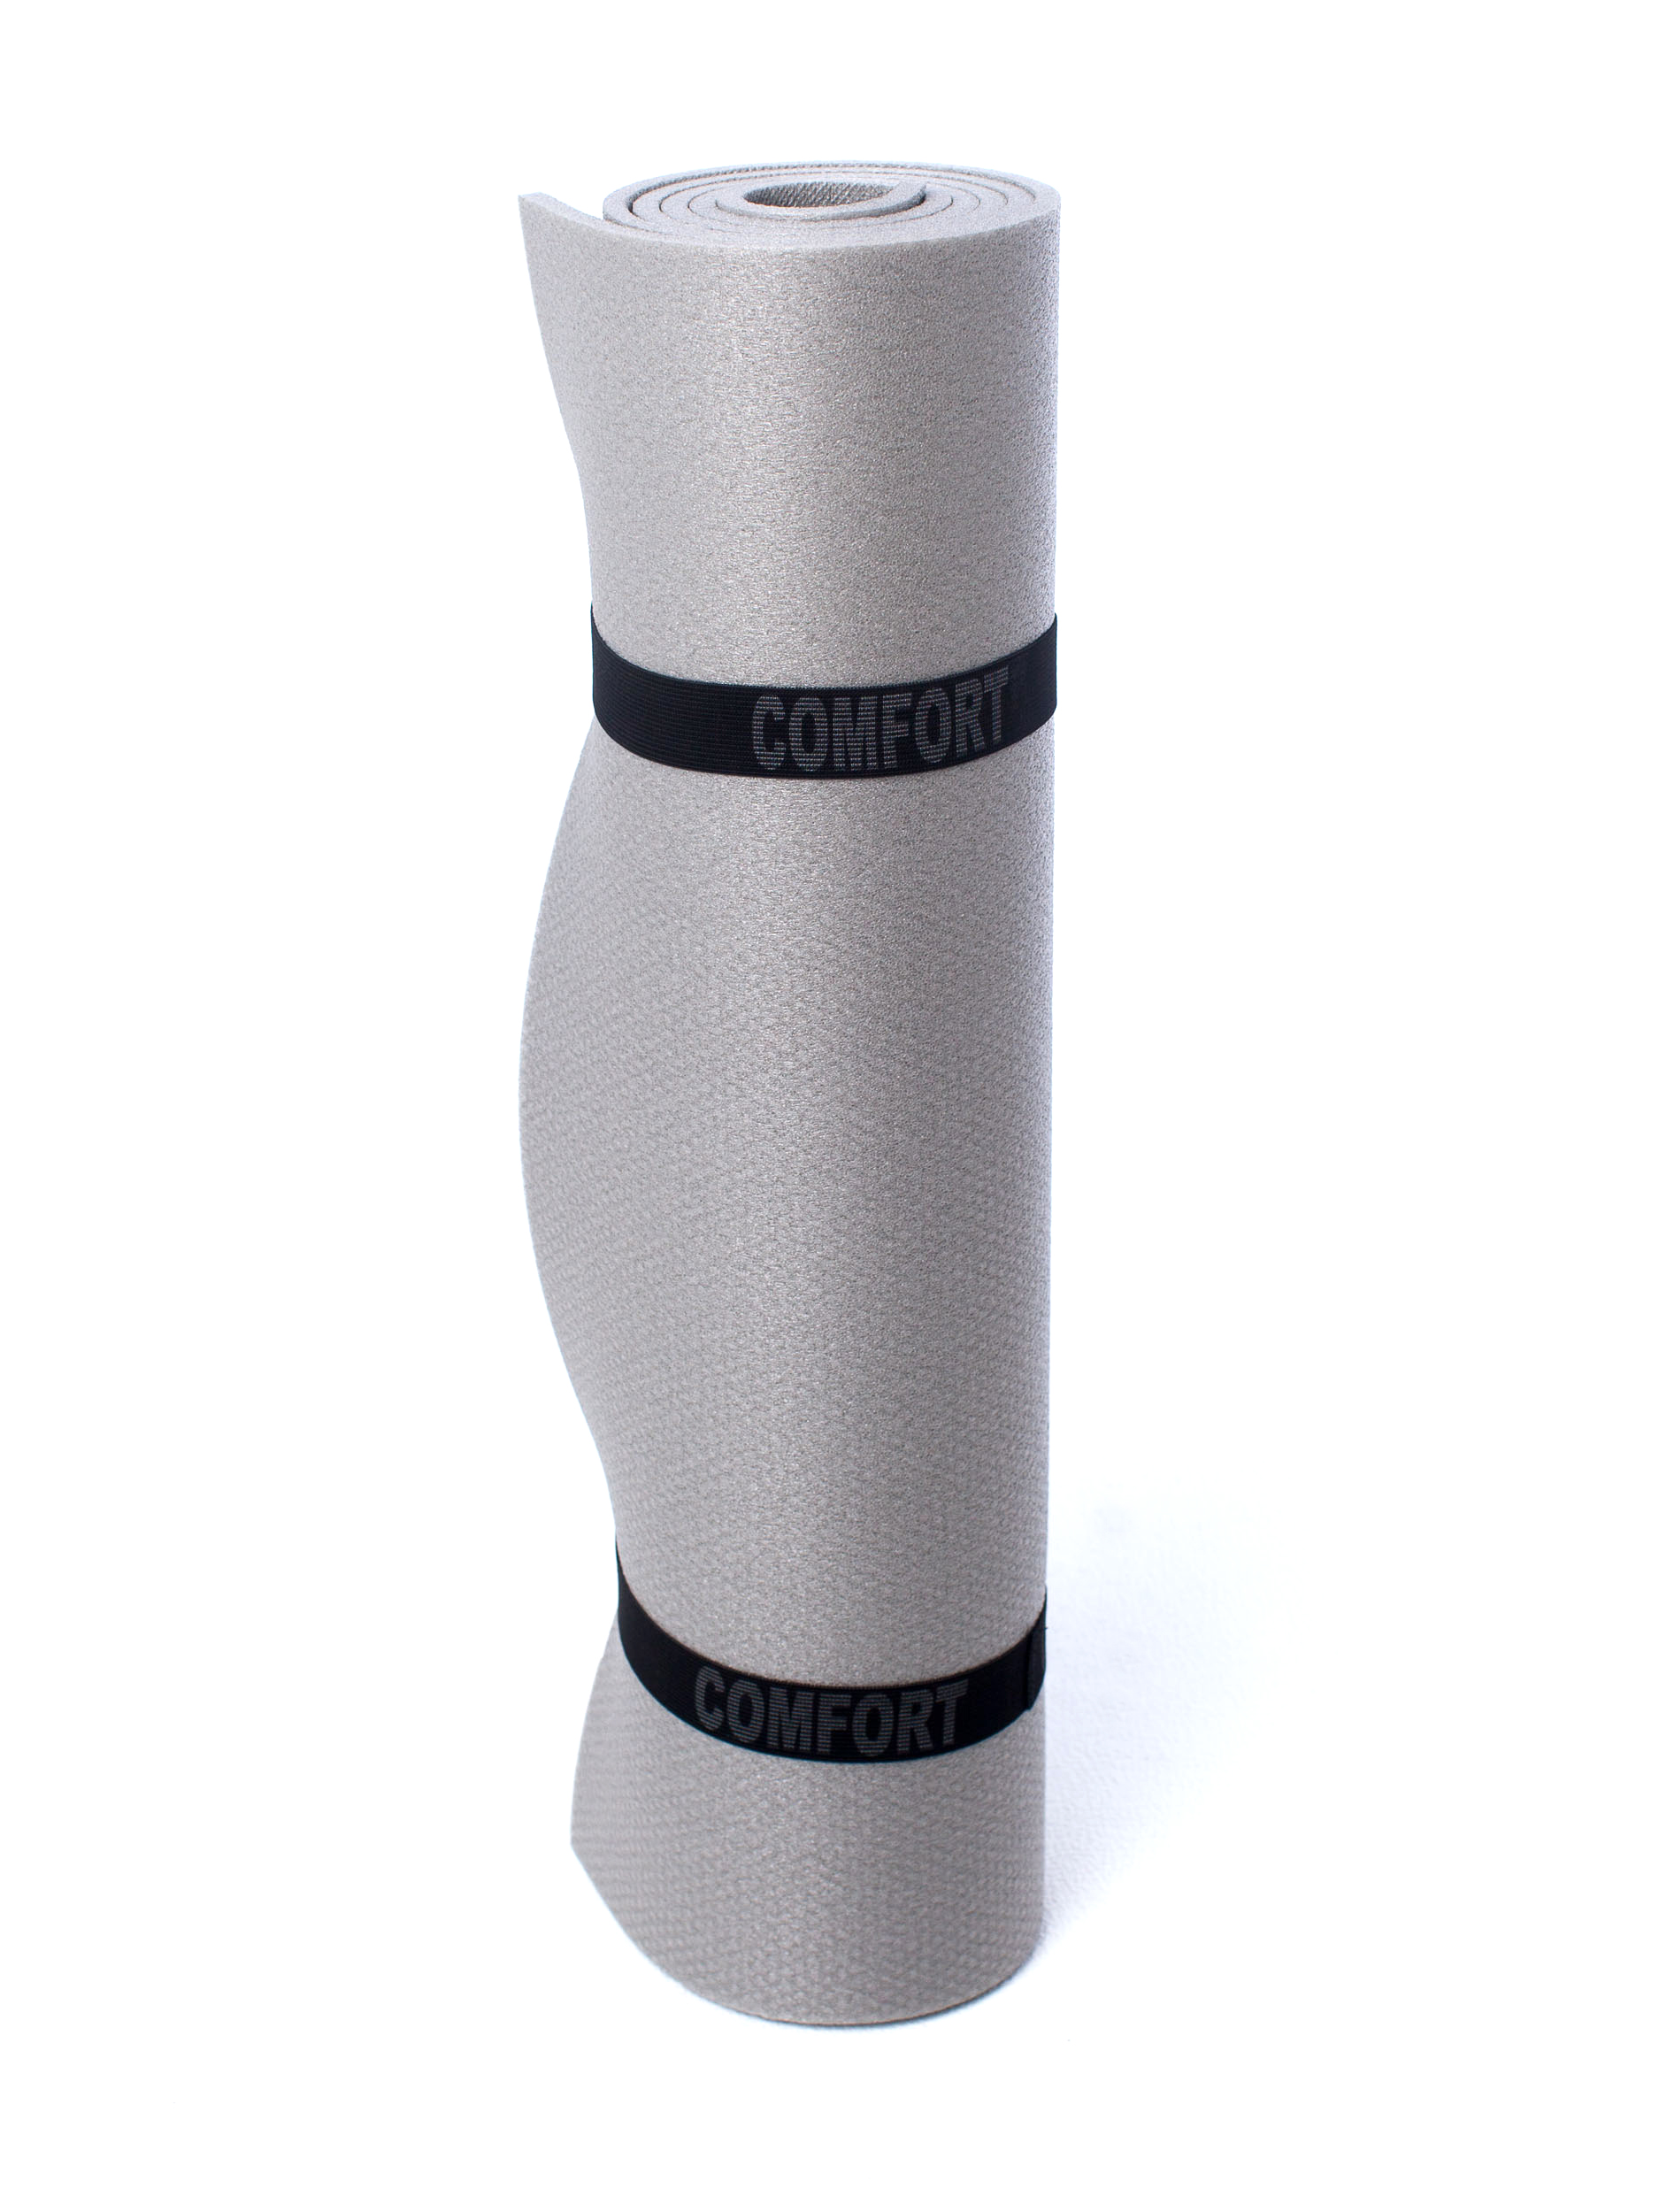 фото Коврик спортивно-туристический с рифлением comfort, цвет: серый, 1800x600x8 мм